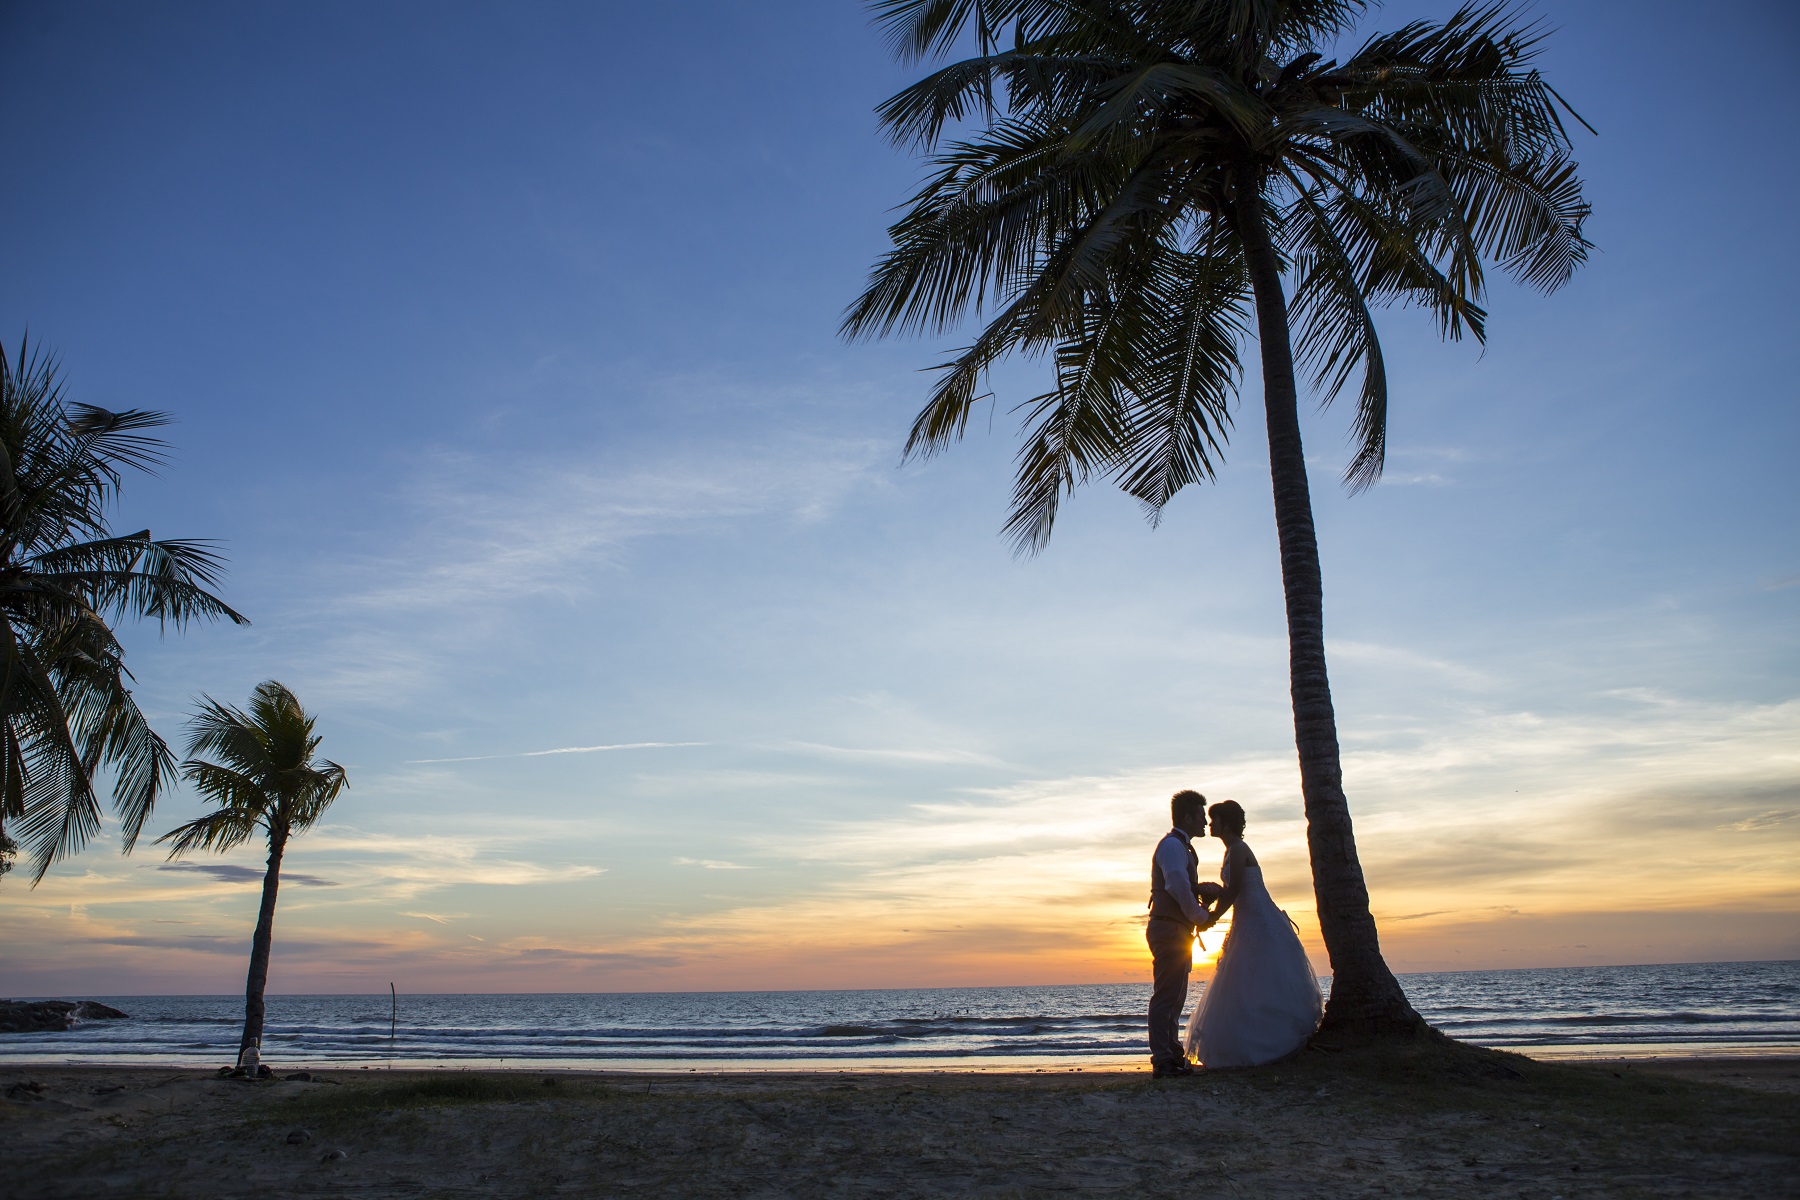 malaysia wedding borneo island kota kinabalu prewedding photoshooting resort resort wedding